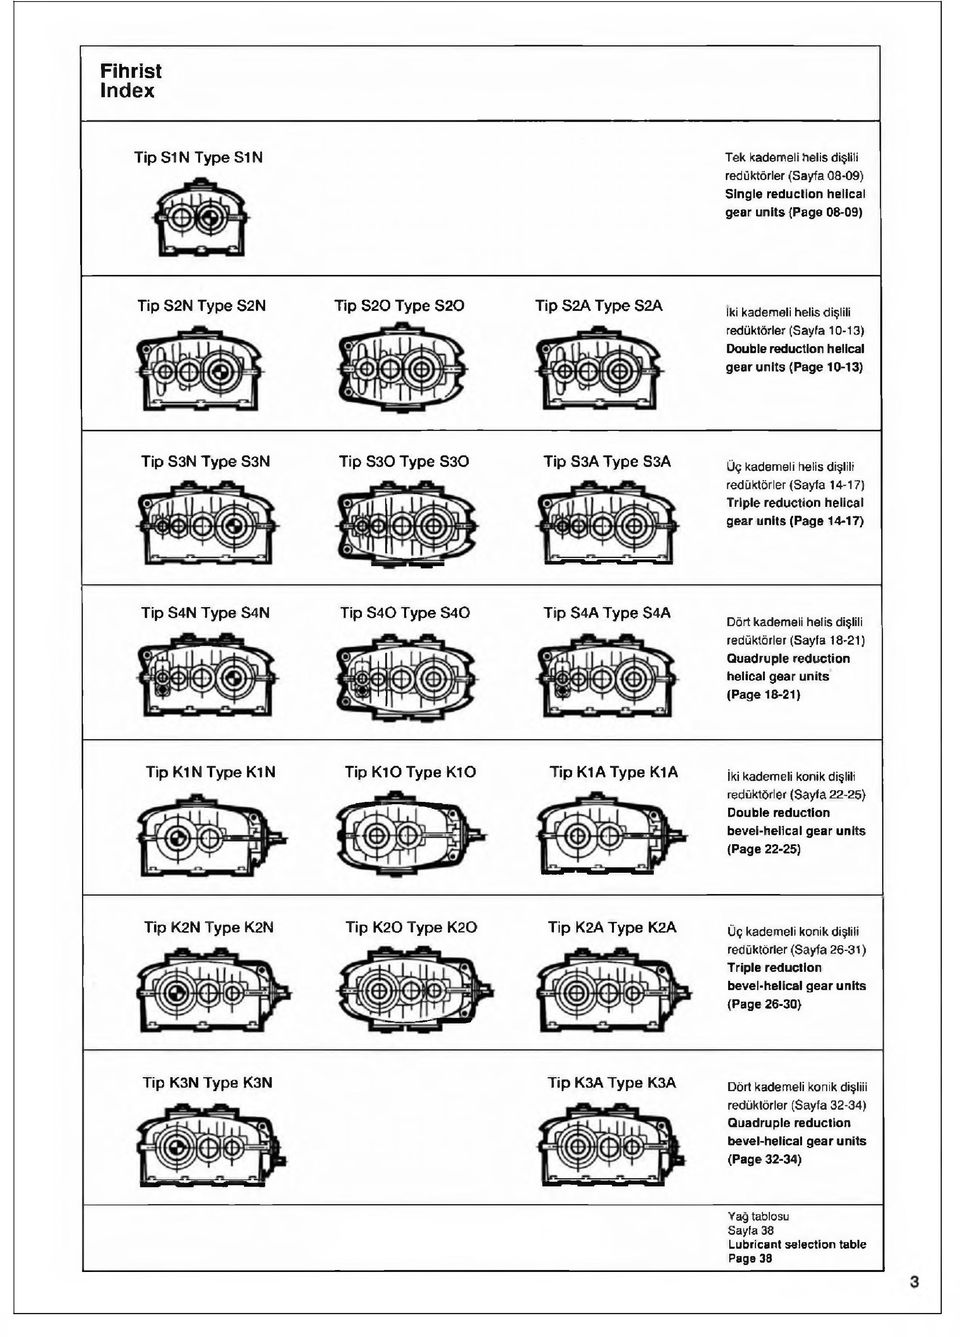 units (Page 14-17) Tip S4N S4N Tip S 4 0 S 4 0 Tip S4A $4A Dört kademeli helis dişlili redüktörler (Sayfa 18-21) Ouadruple reduction helical gear units (Page 18-21) Tip K1 N K1 N Tip K 1 0 K 10 Tip